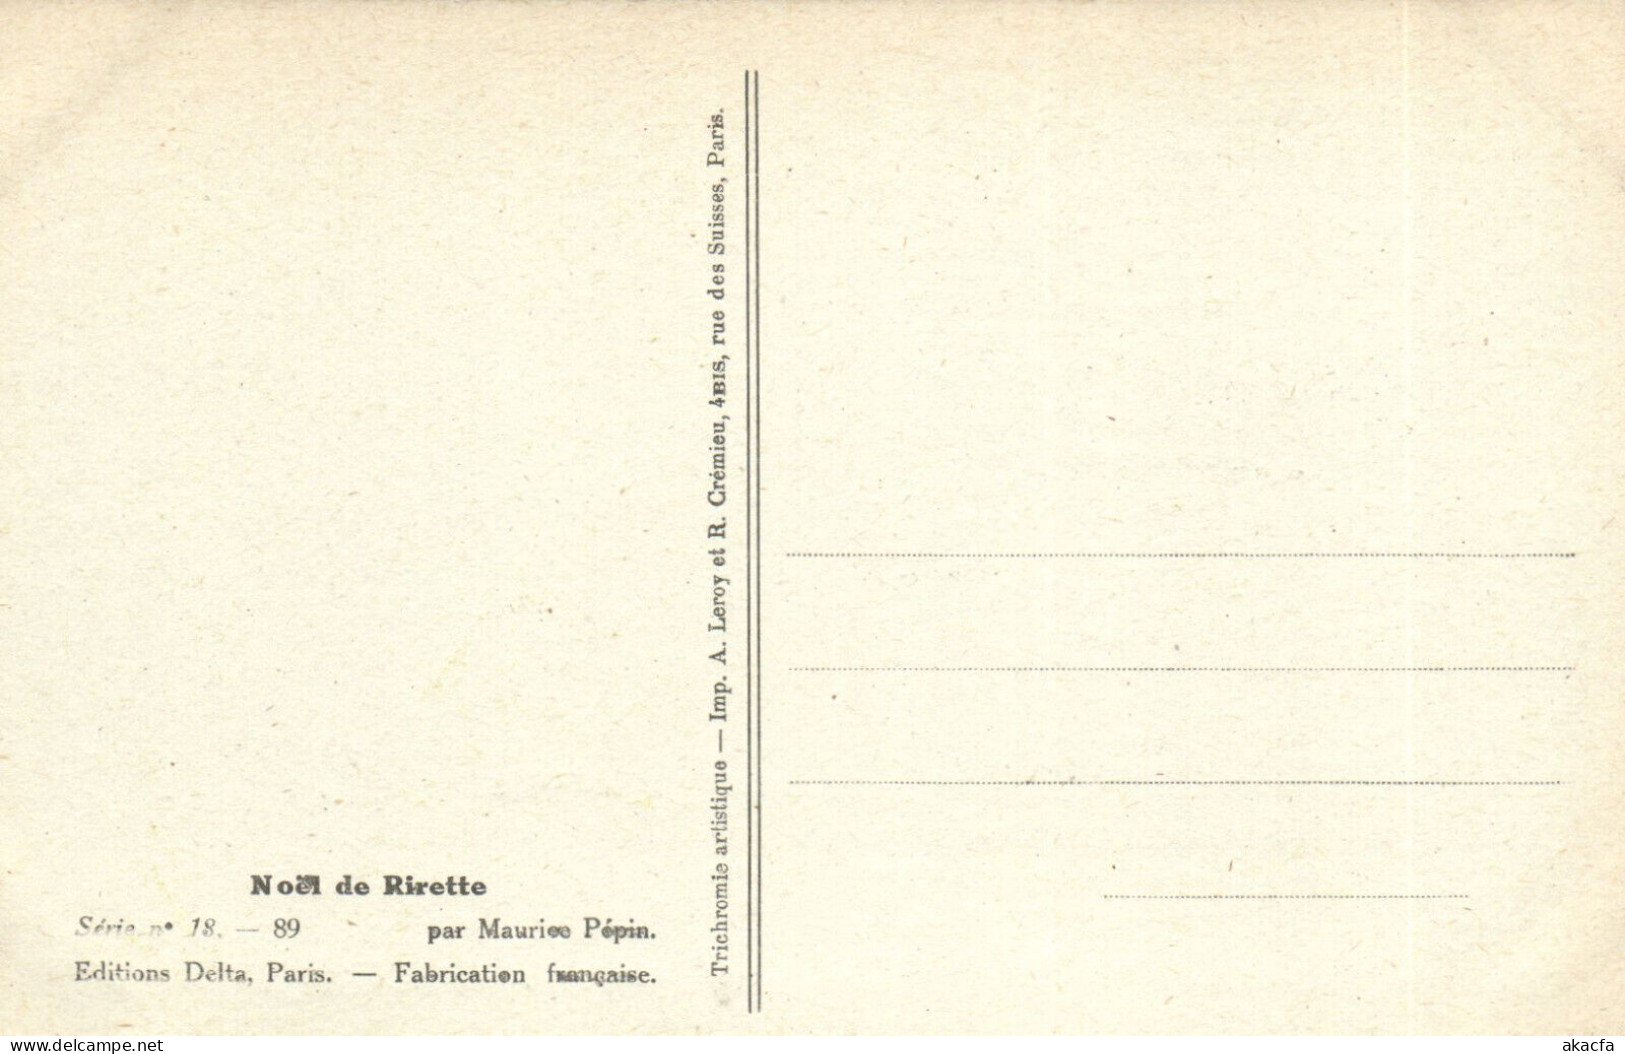 PC ARTIST SIGNED, M. PÉPIN, RISQUE, NOEL DE RIRETTE, Vintage Postcard (b50556) - Pepin